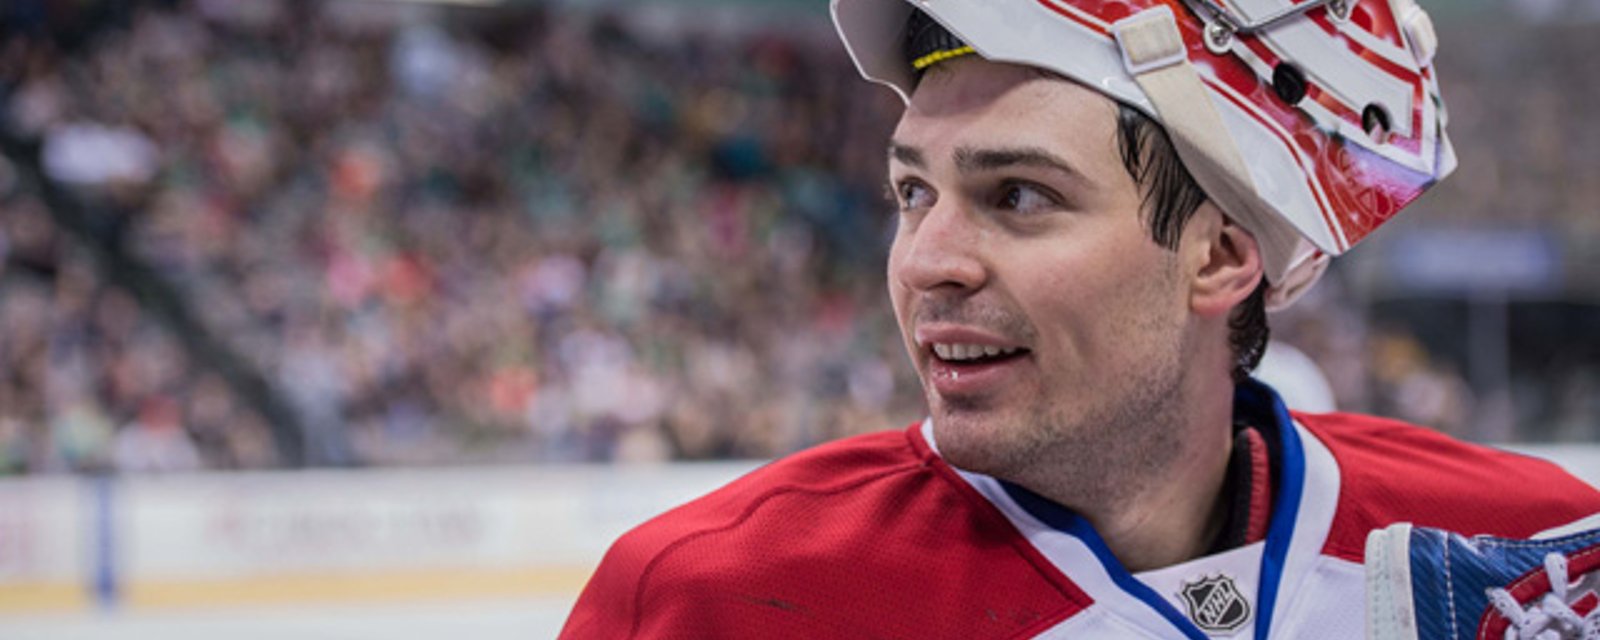 Carey Price pourrait-il attirer un joueur à Montréal?